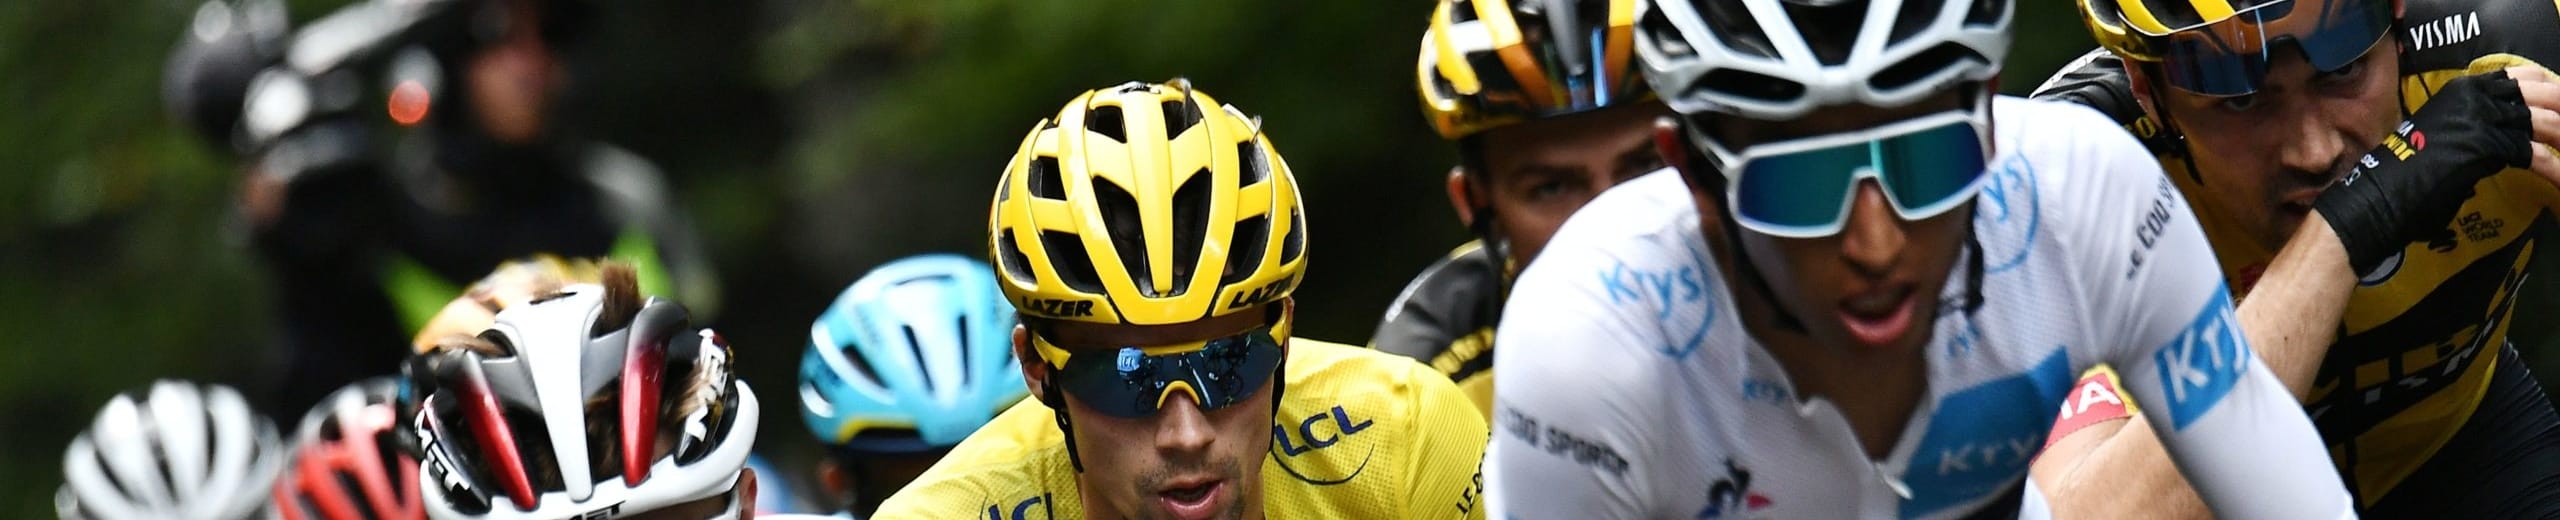 Tour de France 2020, quote e favoriti per la tappa 15: vietato nascondersi